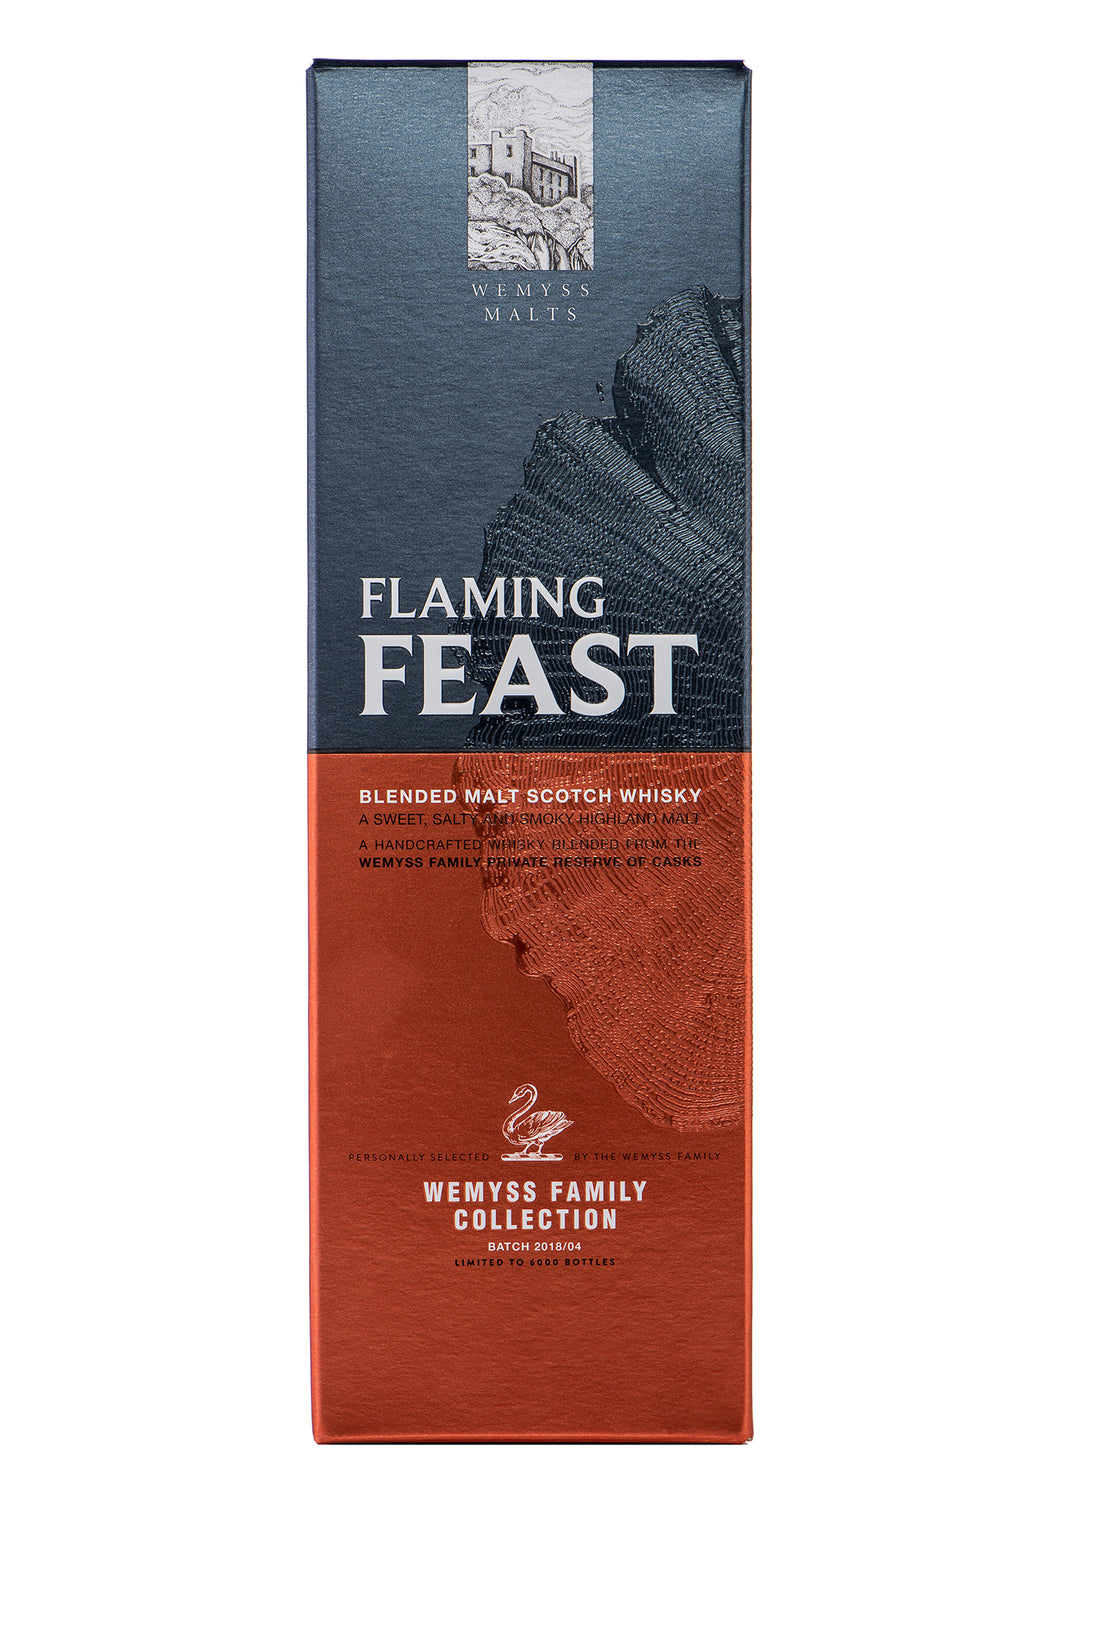 Flaming Feast packaging 